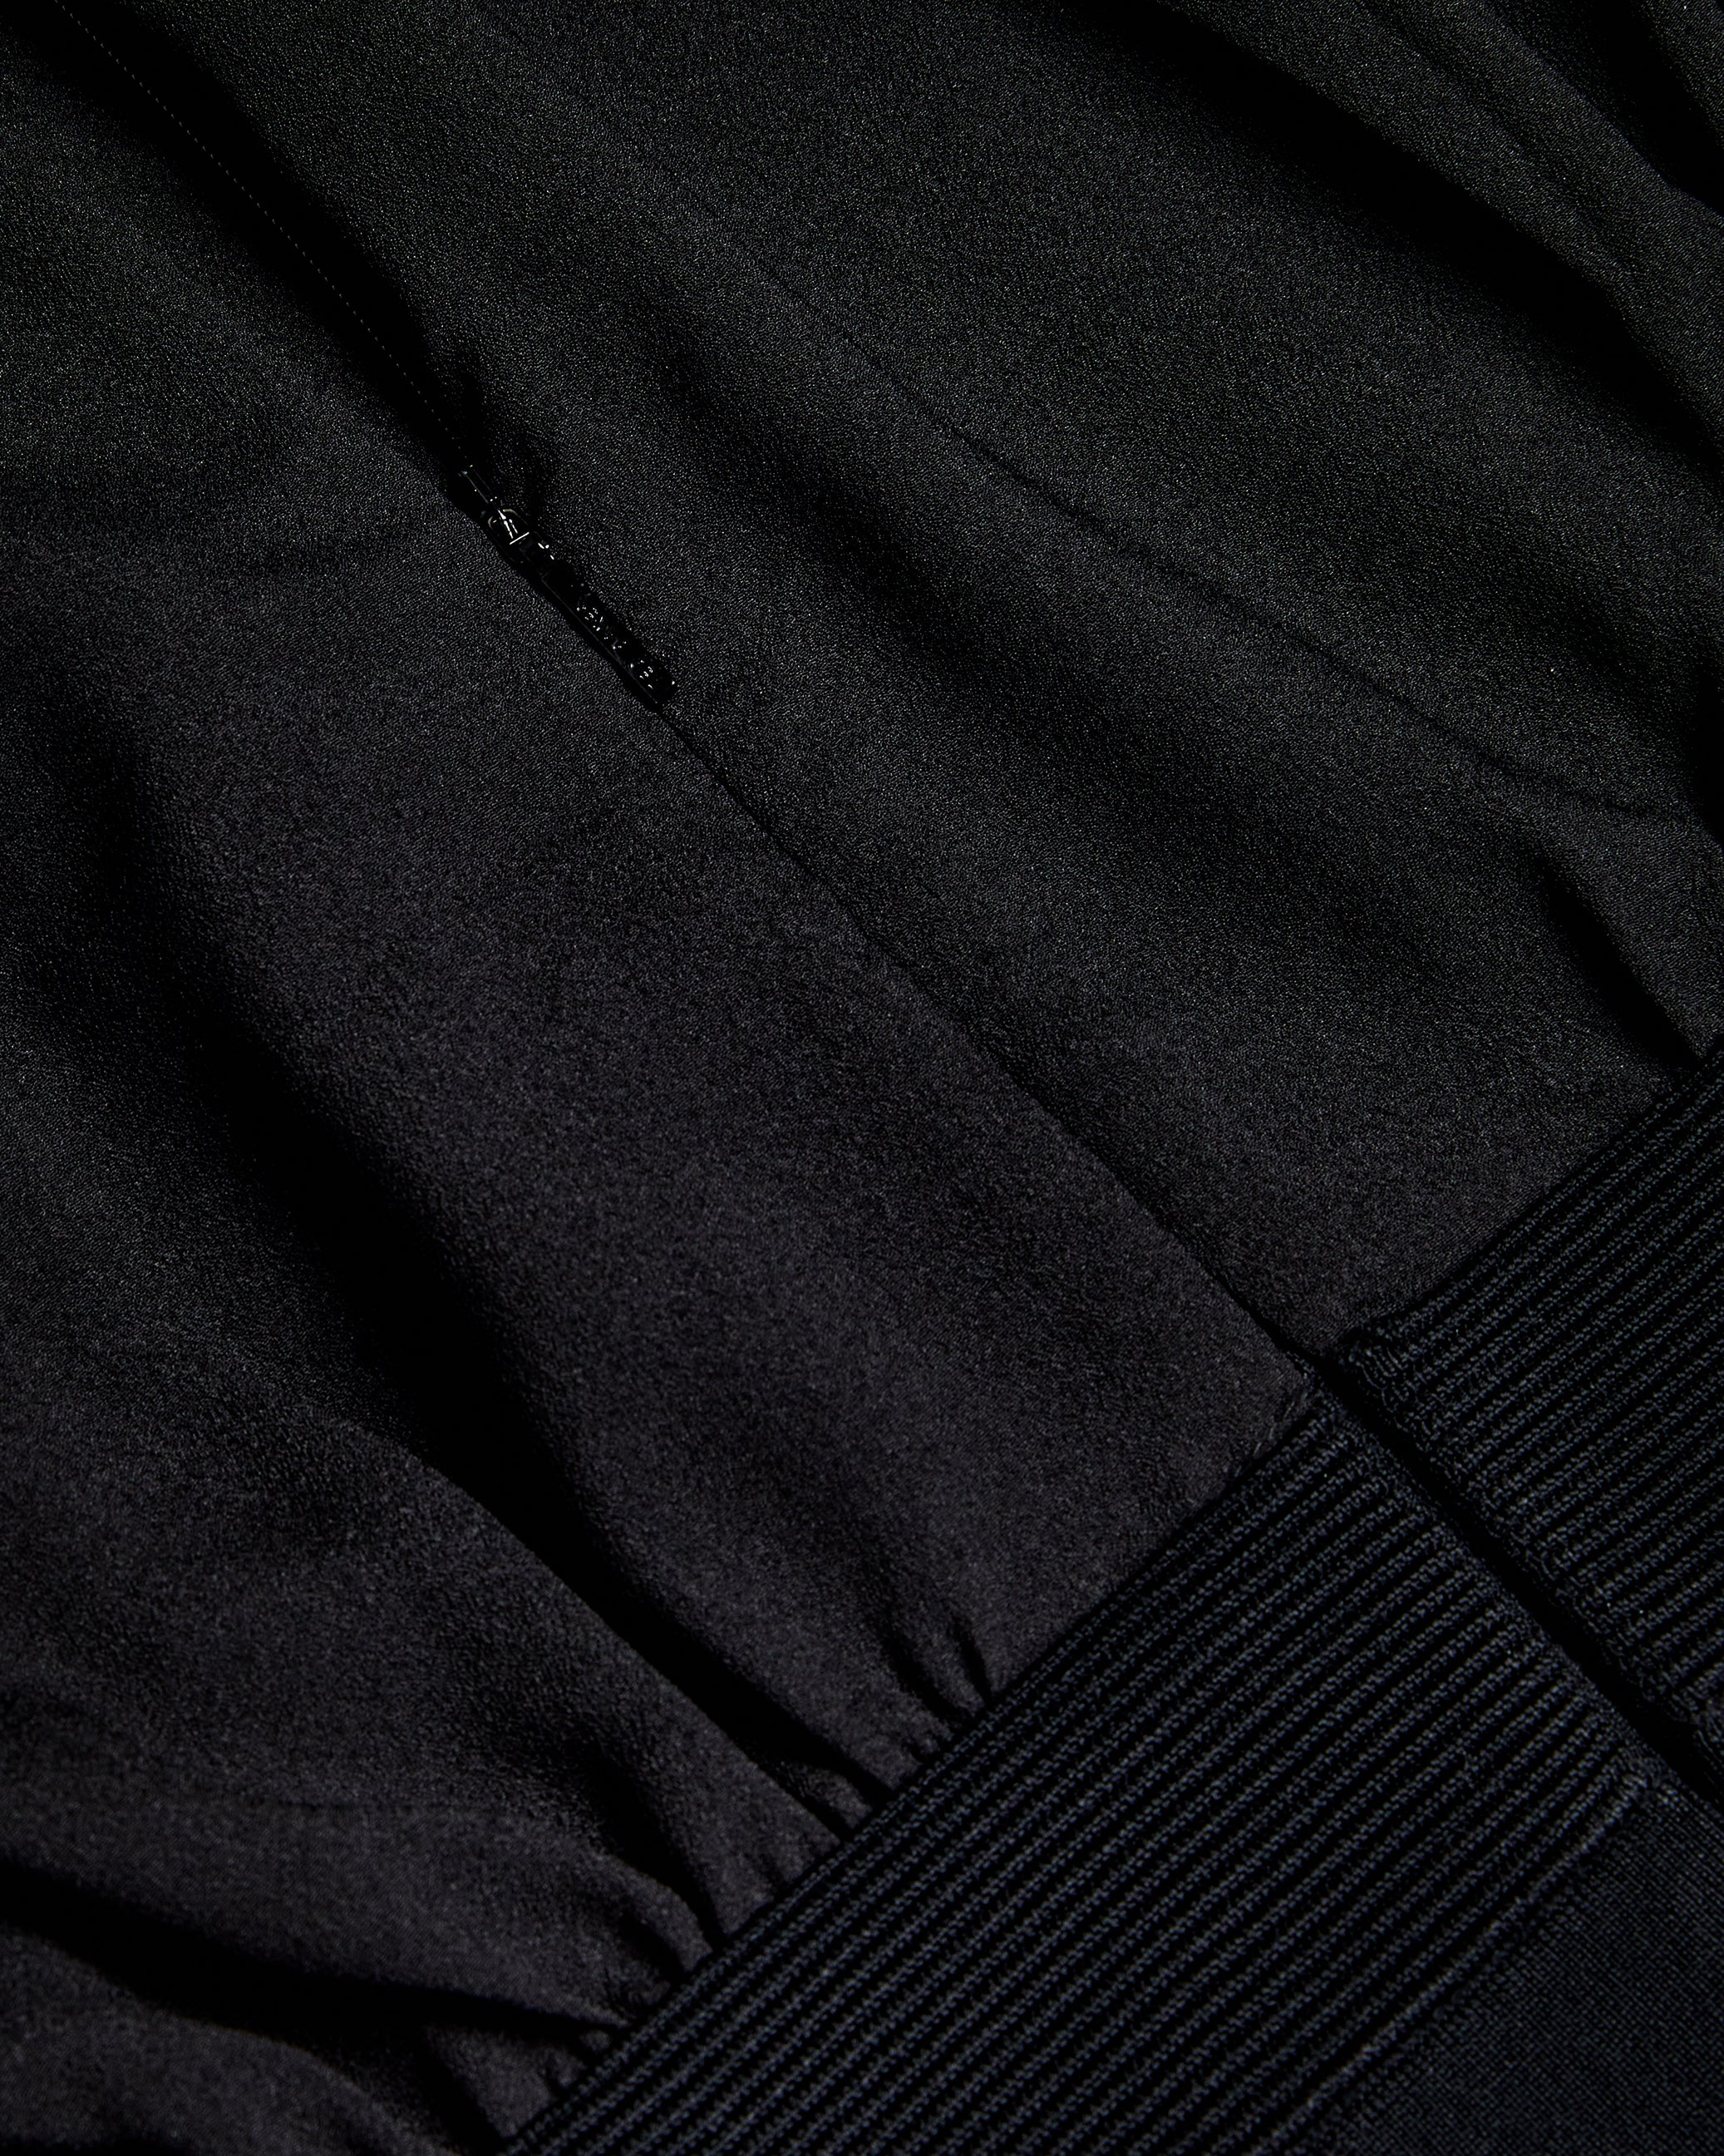 Mersea Midi Pencil Dress With Knit Skirt Black